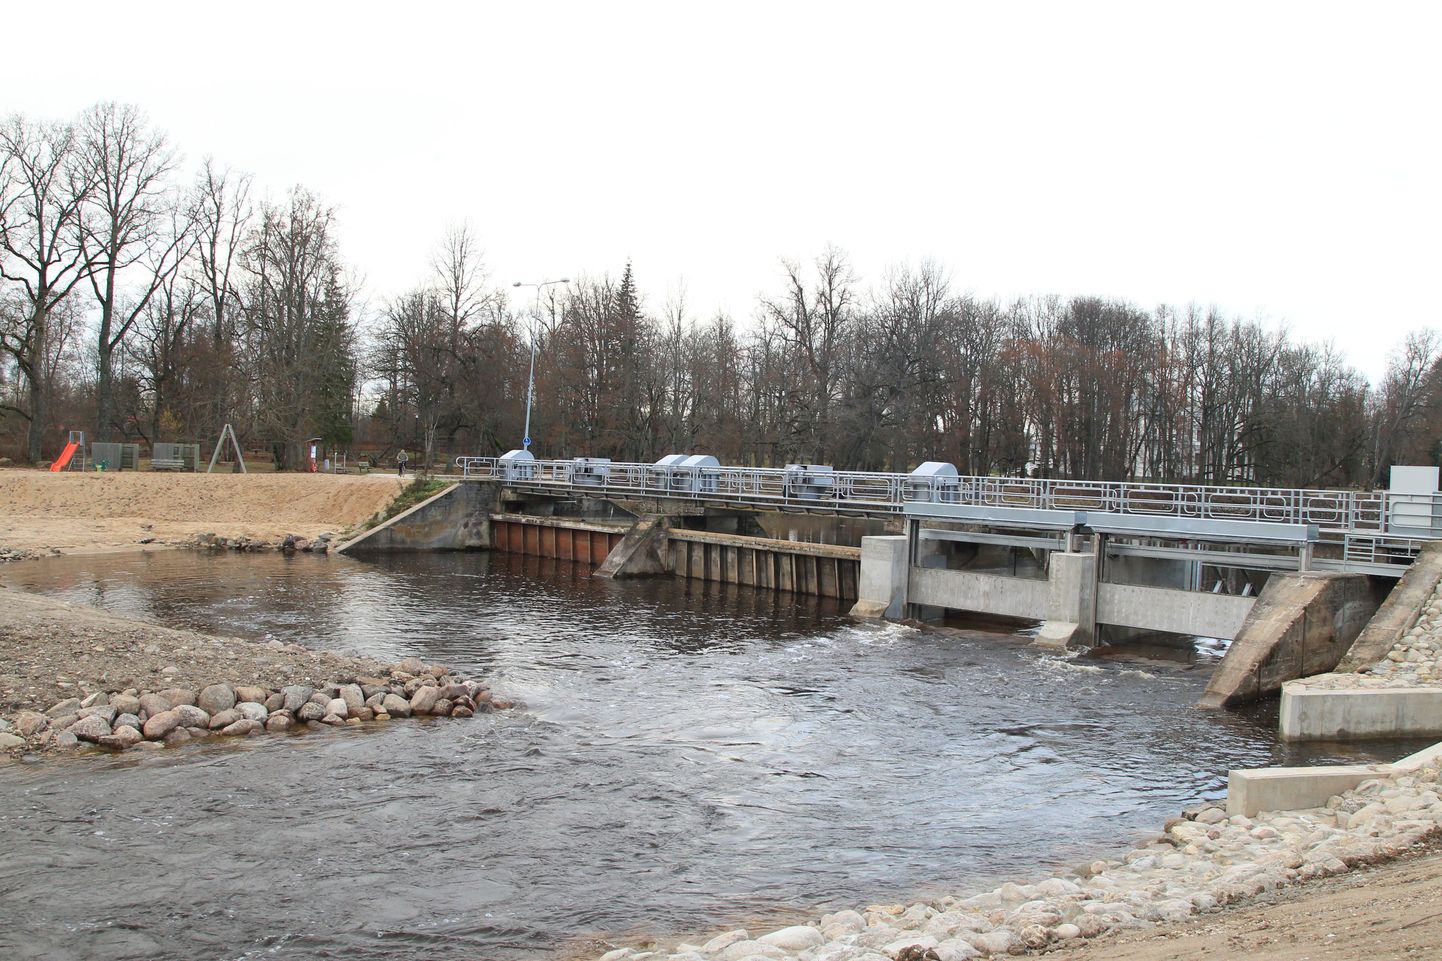 Pildil mullu novembris valmis saanud Puurmani pais ja kalapääs, mis valiti Jõgevamaa 2015. aasta keskkonnateoks.